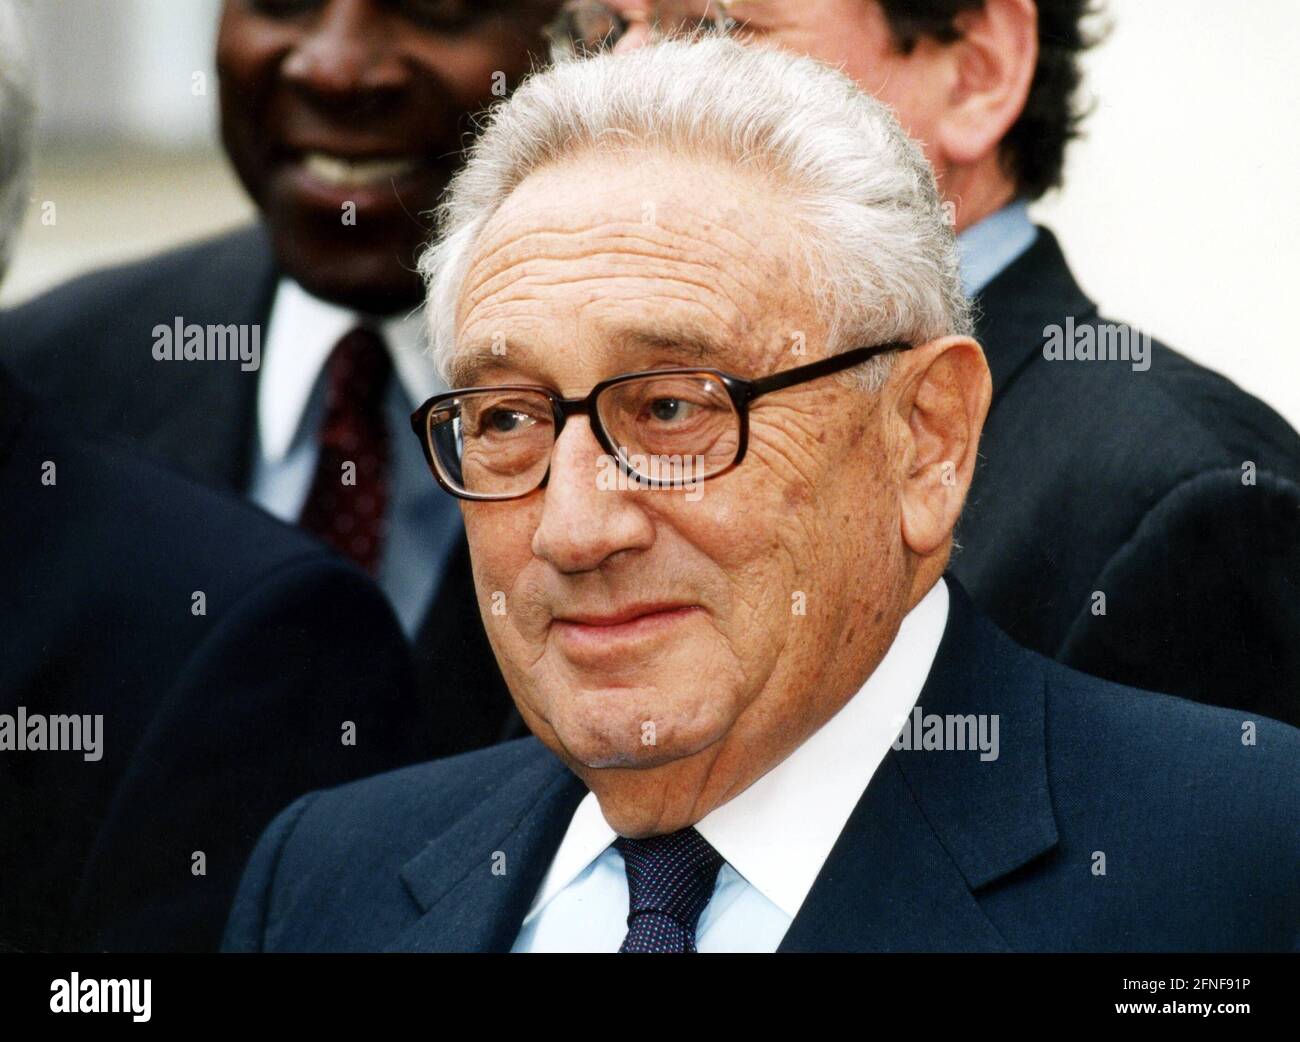 Henry Kissinger (geboren 1923), amerikanischer Politiker und ehemaliger Staatssekretär. Das Foto wurde anlässlich der Einweihung des Hans Arnold Zentrums der American Academy in Berlin aufgenommen. [Automatisierte Übersetzung] Stockfoto